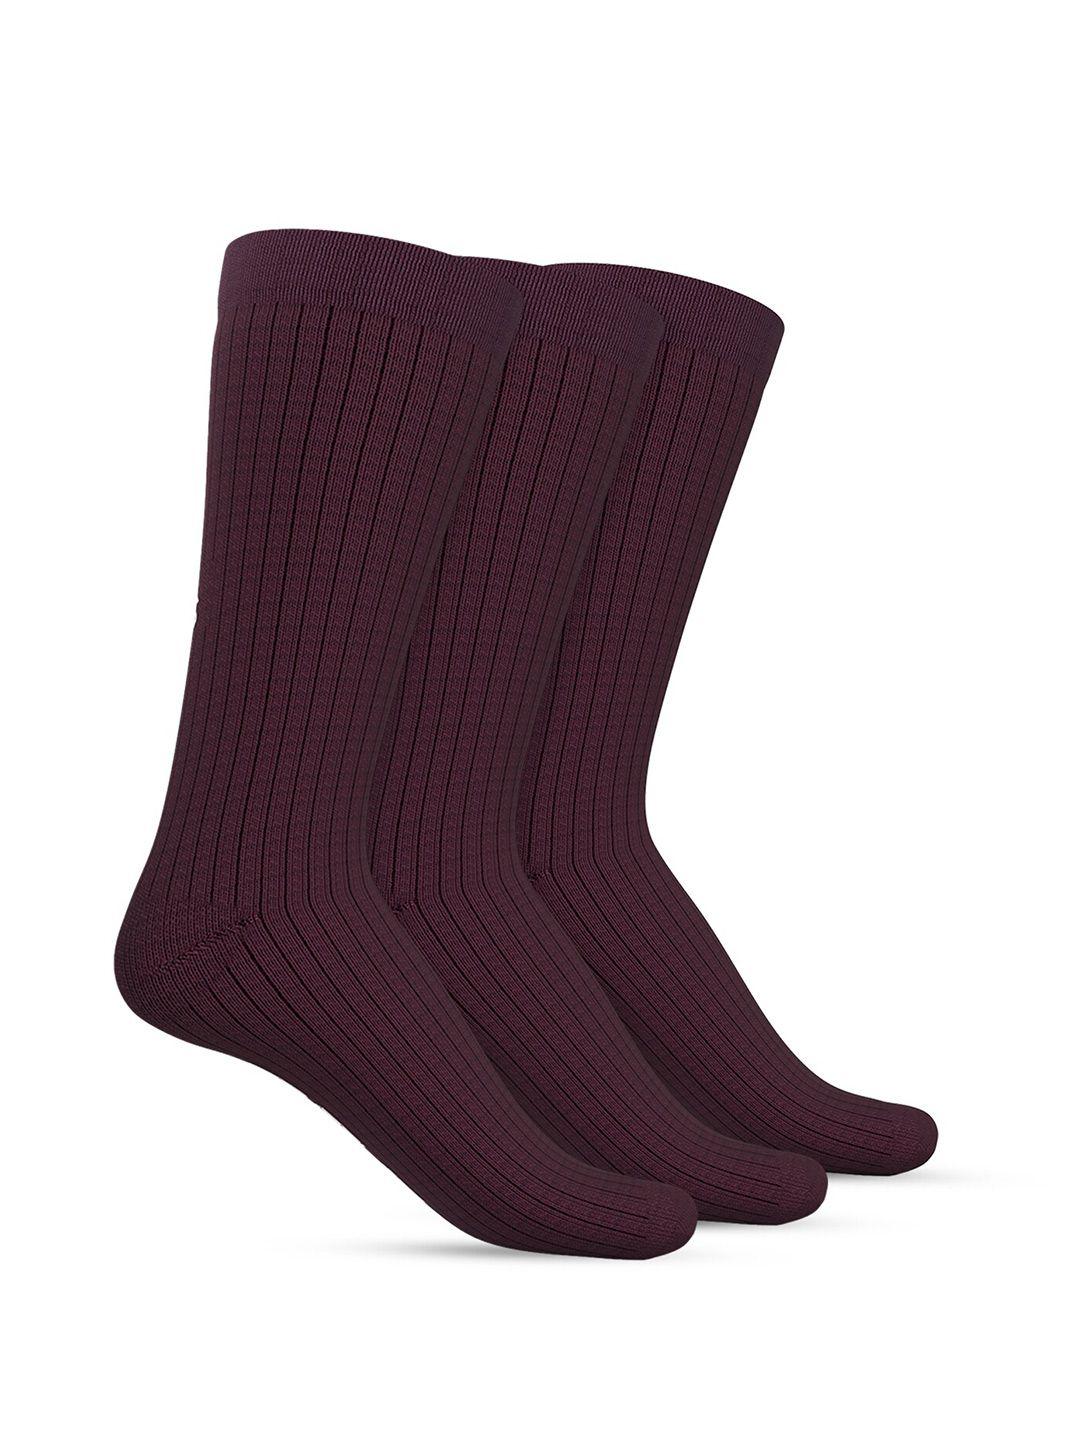 talkingsox-unisex-pack-of-3-calf-length-socks